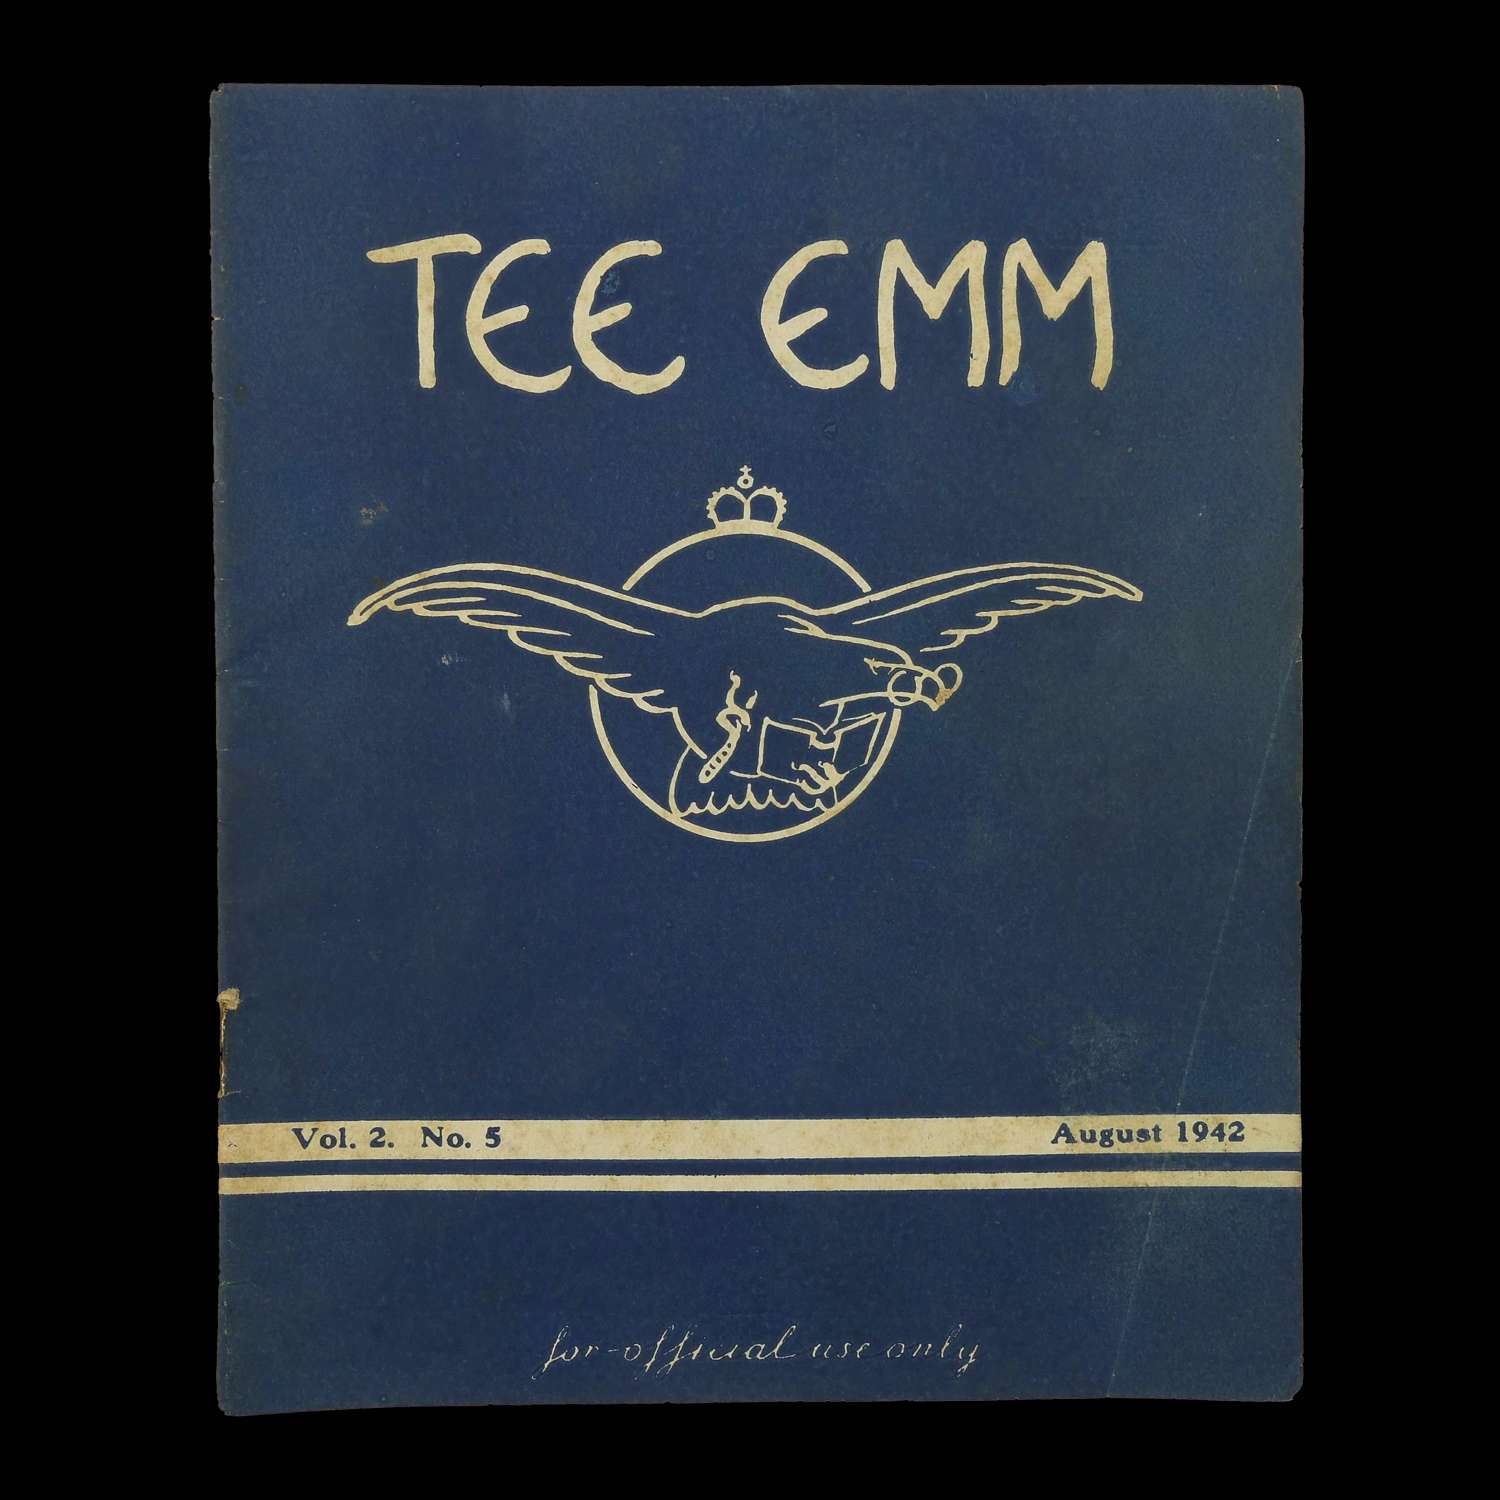 Tee Emm, August 1942